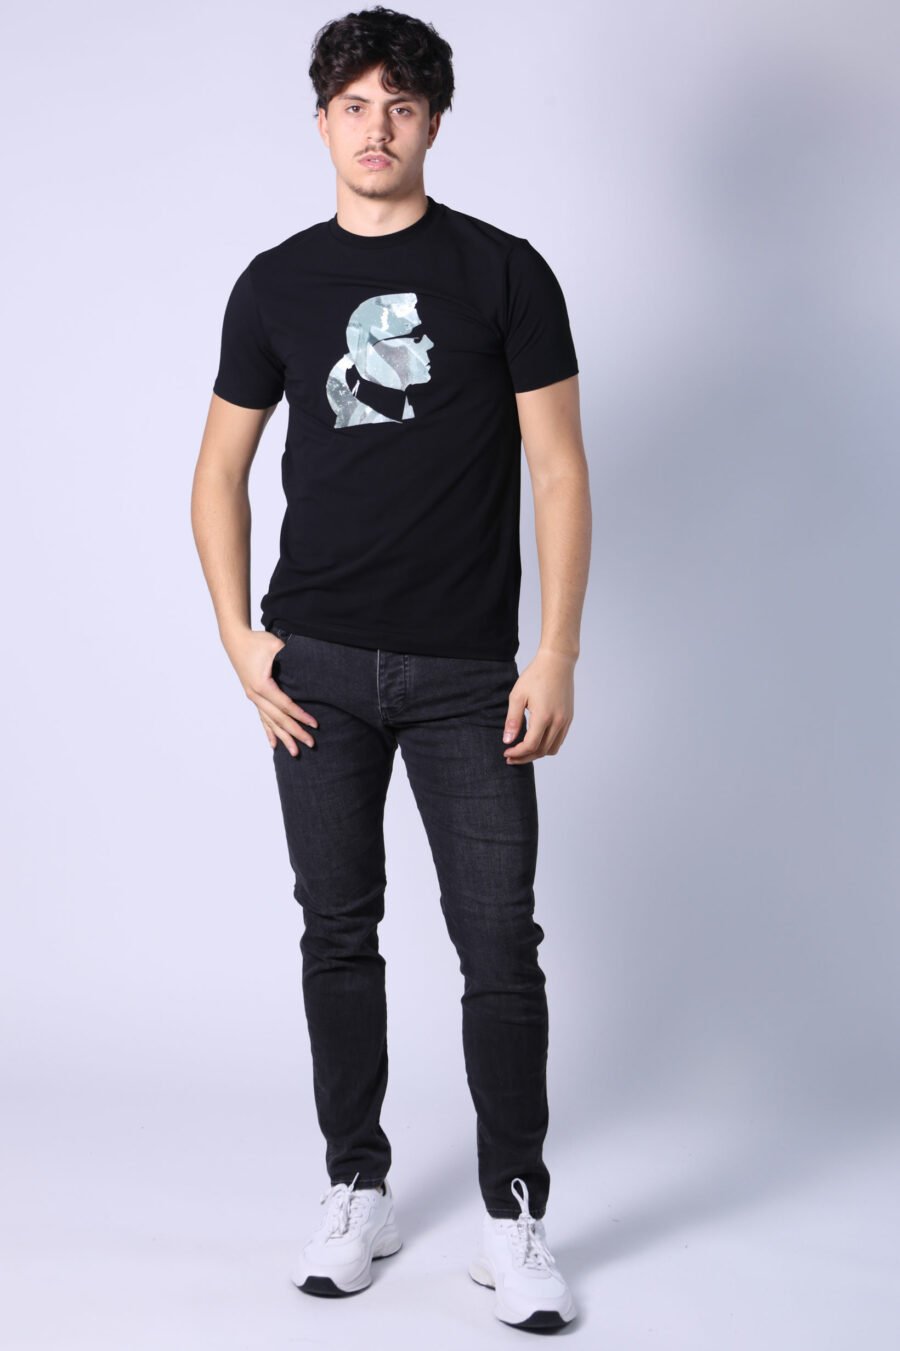 T-shirt preta com perfil de camuflagem "karl" - Untitled Catalog 05800